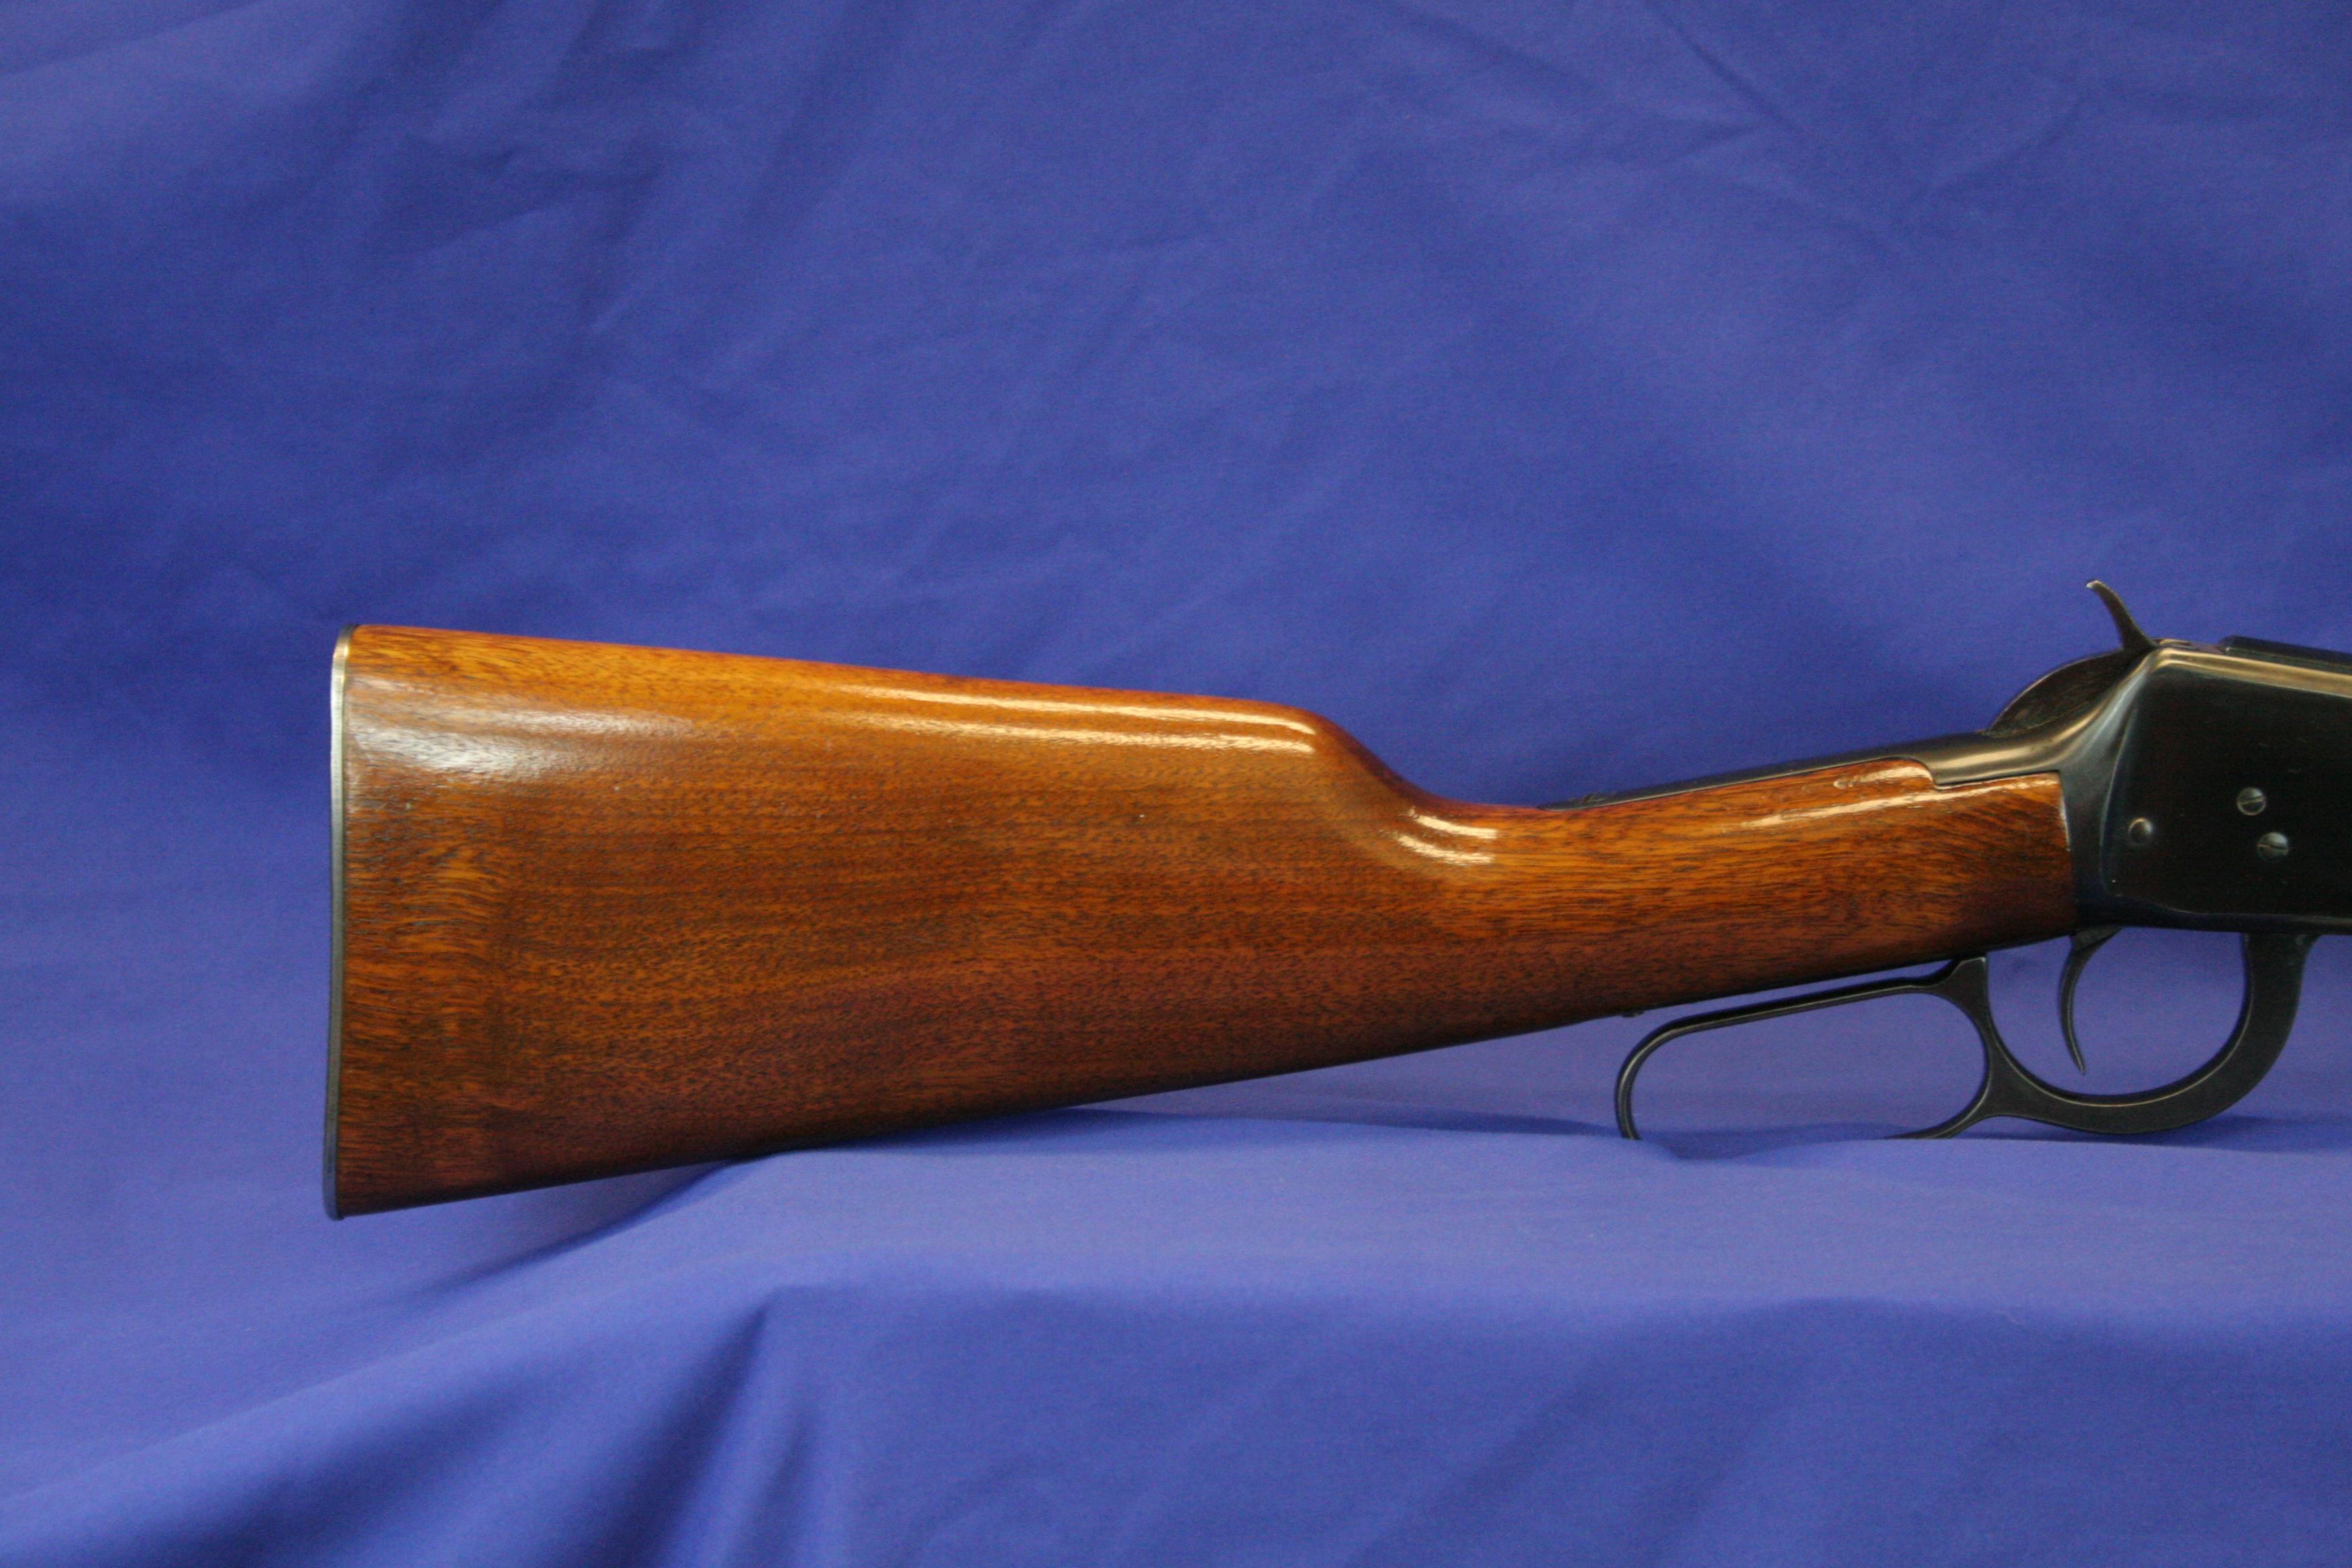 Winchester Model 94 Rifle "pre 64" Sn:2469138